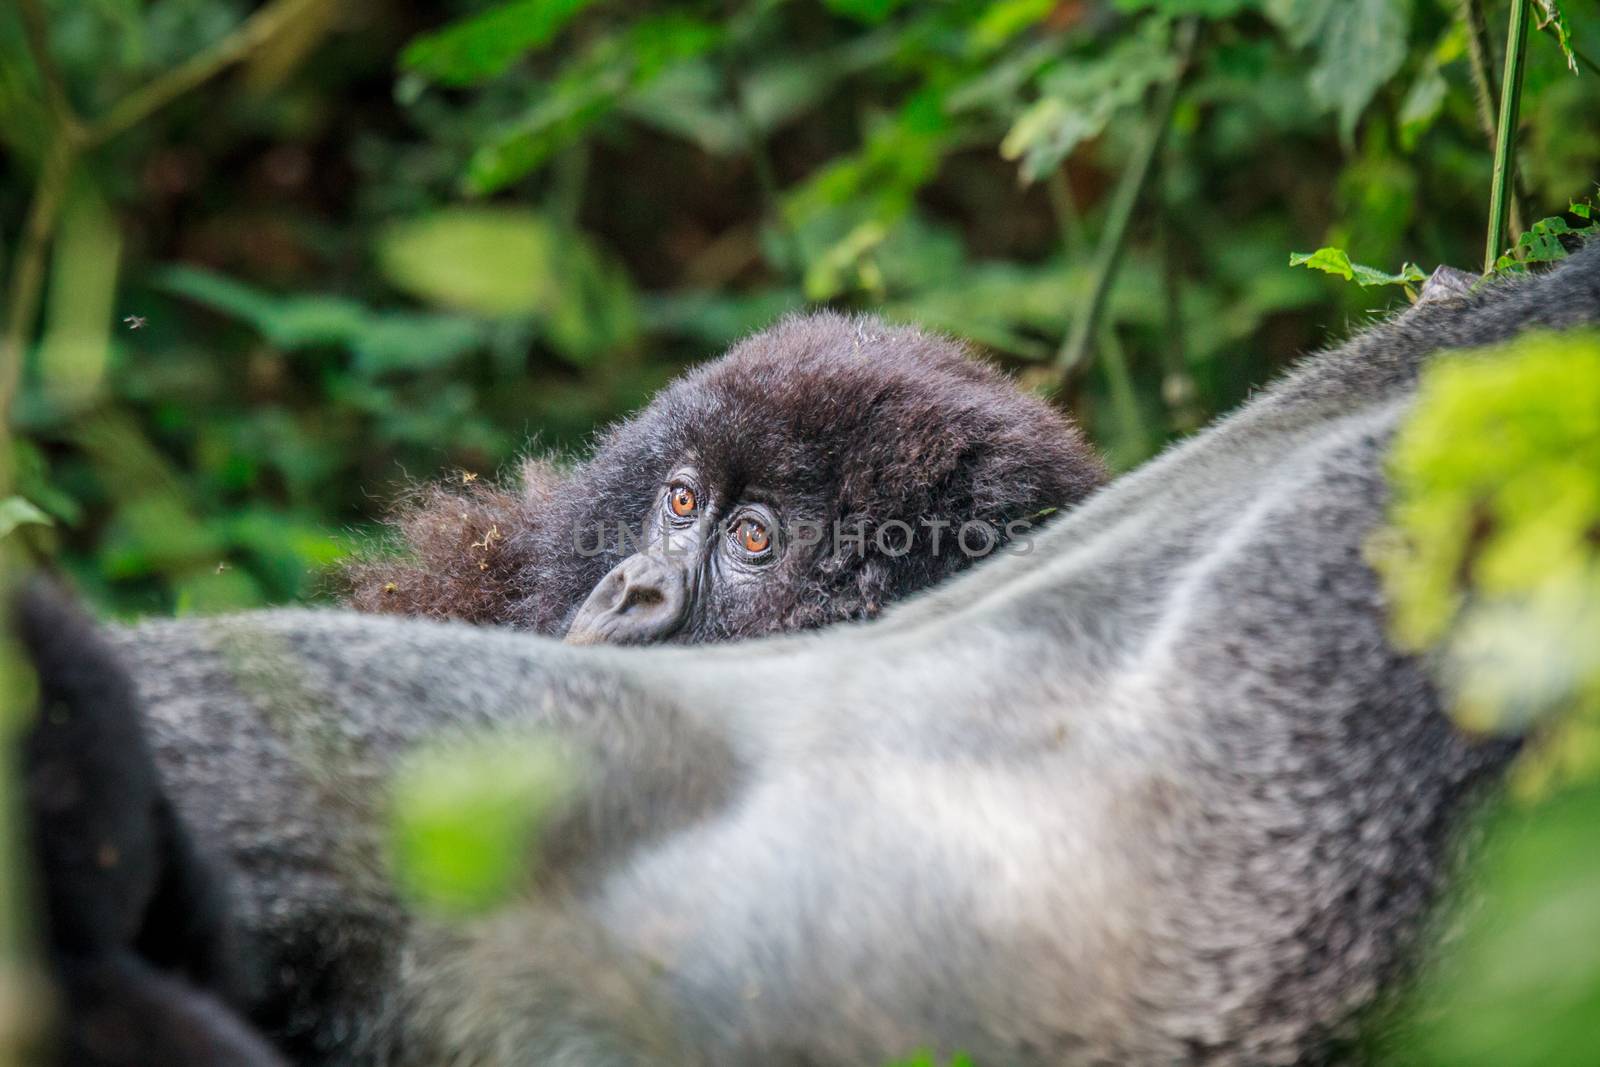 Baby Mountain gorilla hiding behind a Silverback. by Simoneemanphotography